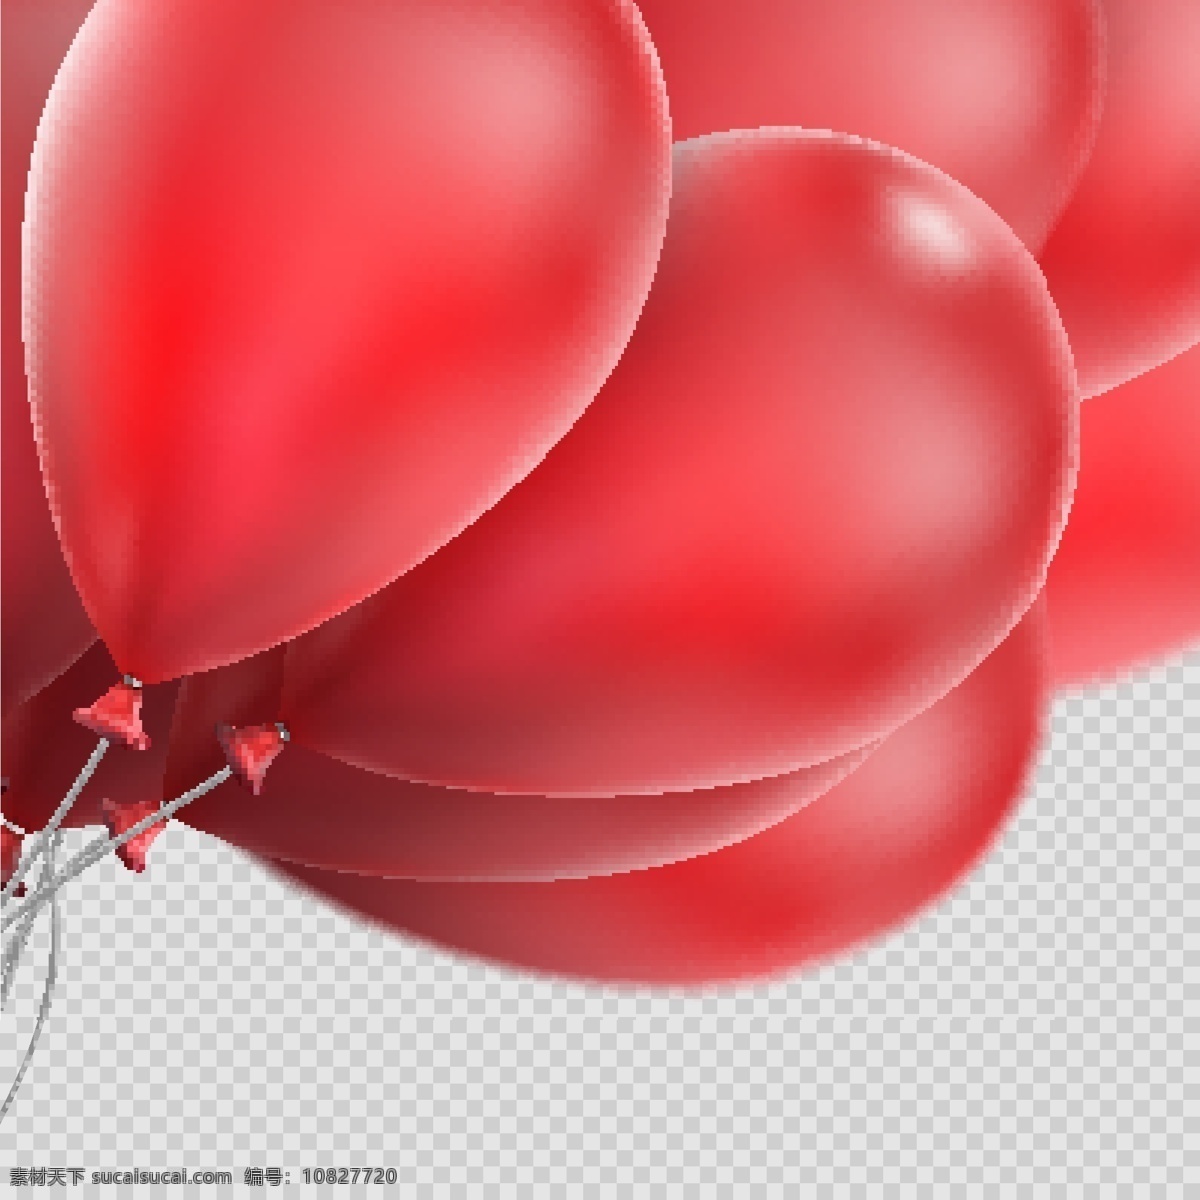 美丽 红色 气球 矢量 立体气球 红色气球 节日素材 庆祝 装饰 元素卡通 气球气球 背景 创意背景 抽象背景 底纹背景